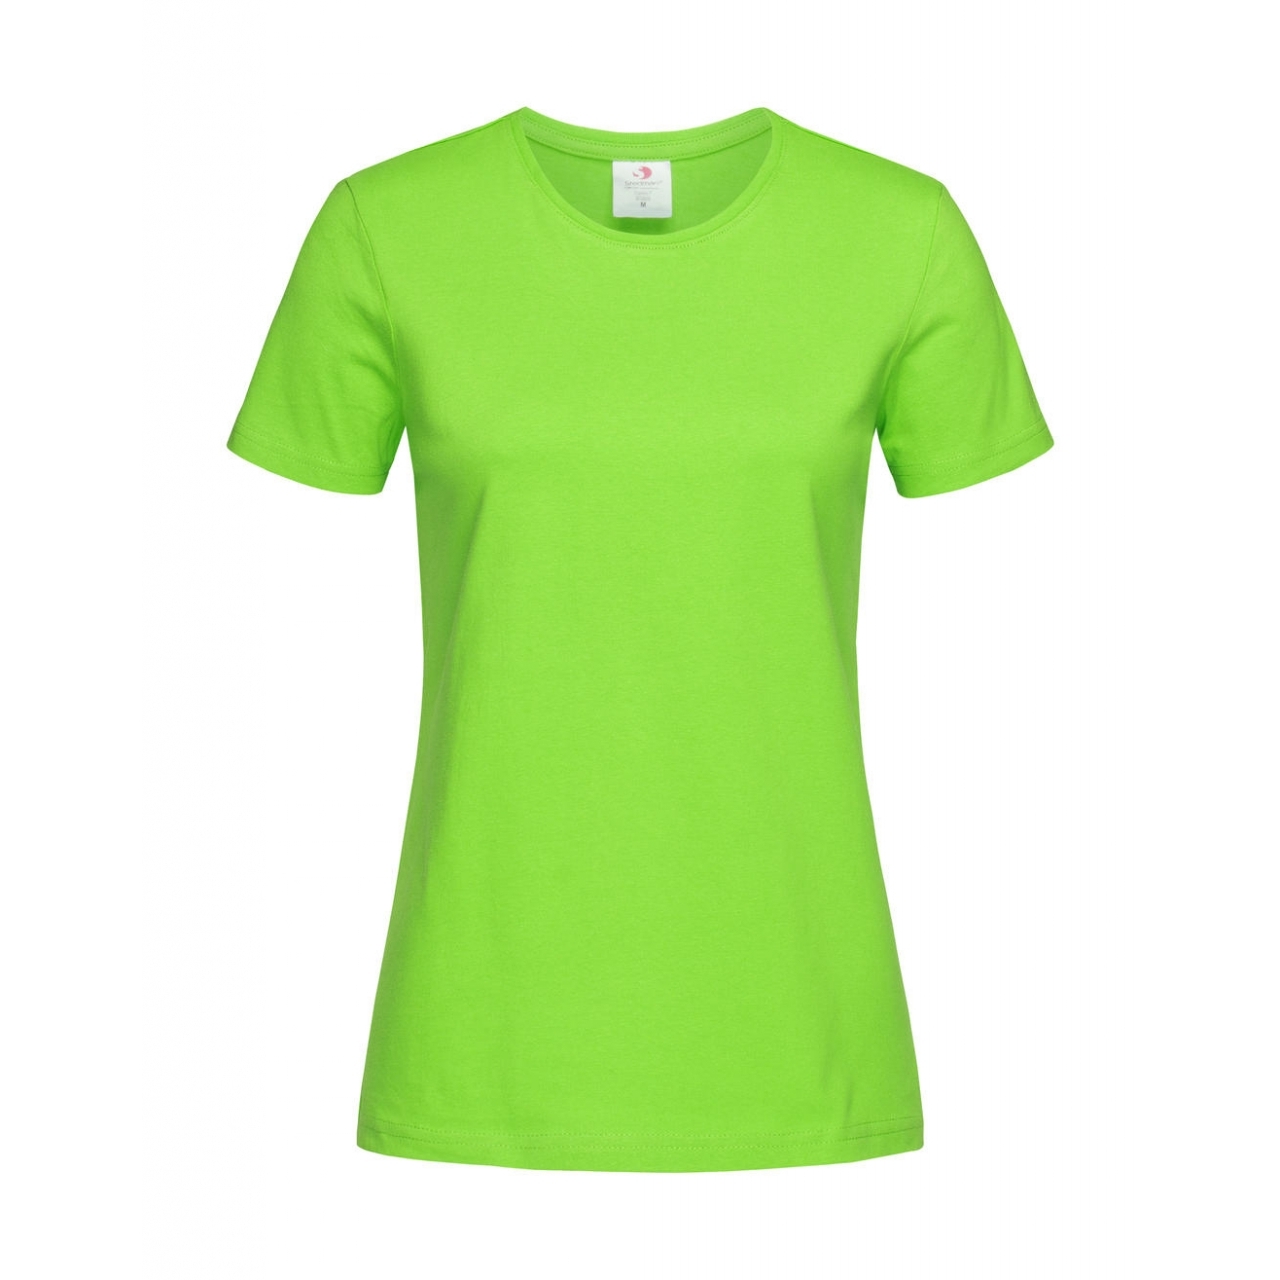 Tričko dámské Stedman Fitted s kulatým výstřihem - světle zelené, M